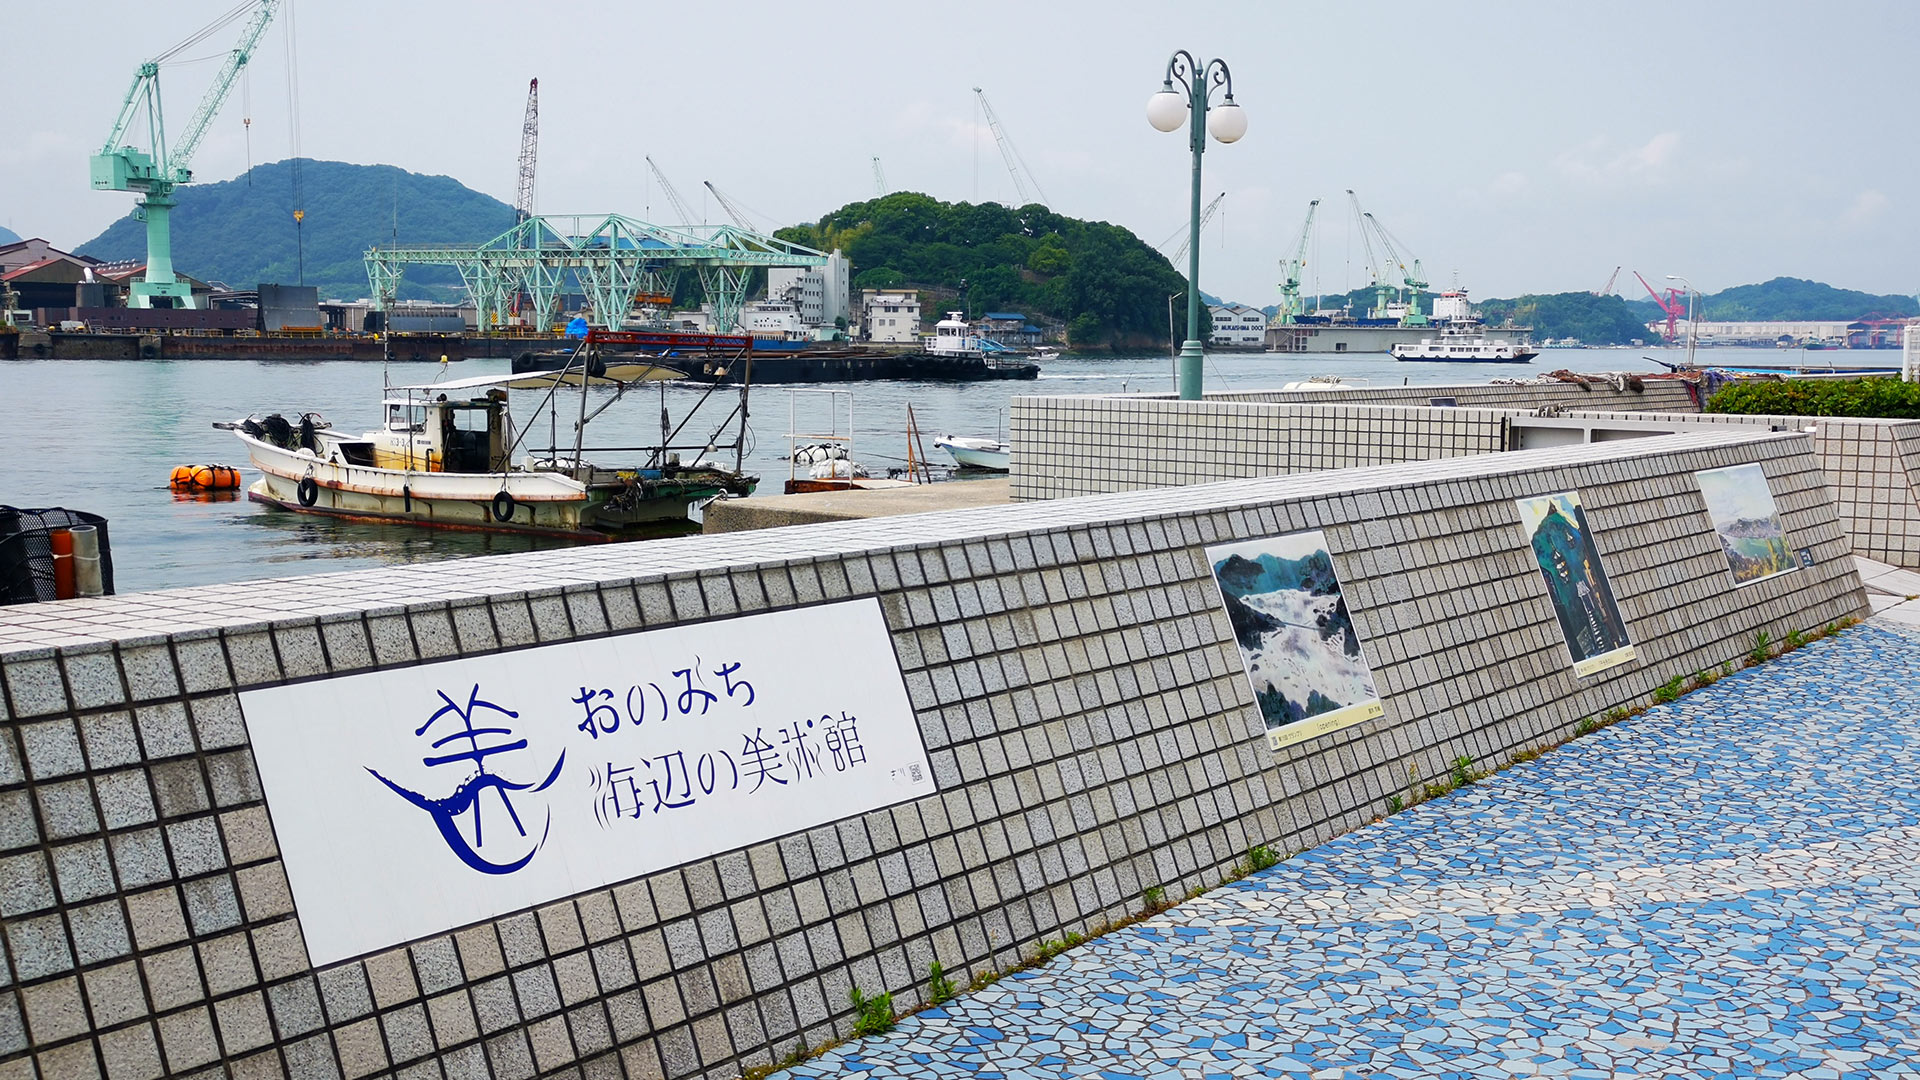 おのみち海辺の美術館(おのみちうみべのびじゅつかん) Onomichi Seaside Museum